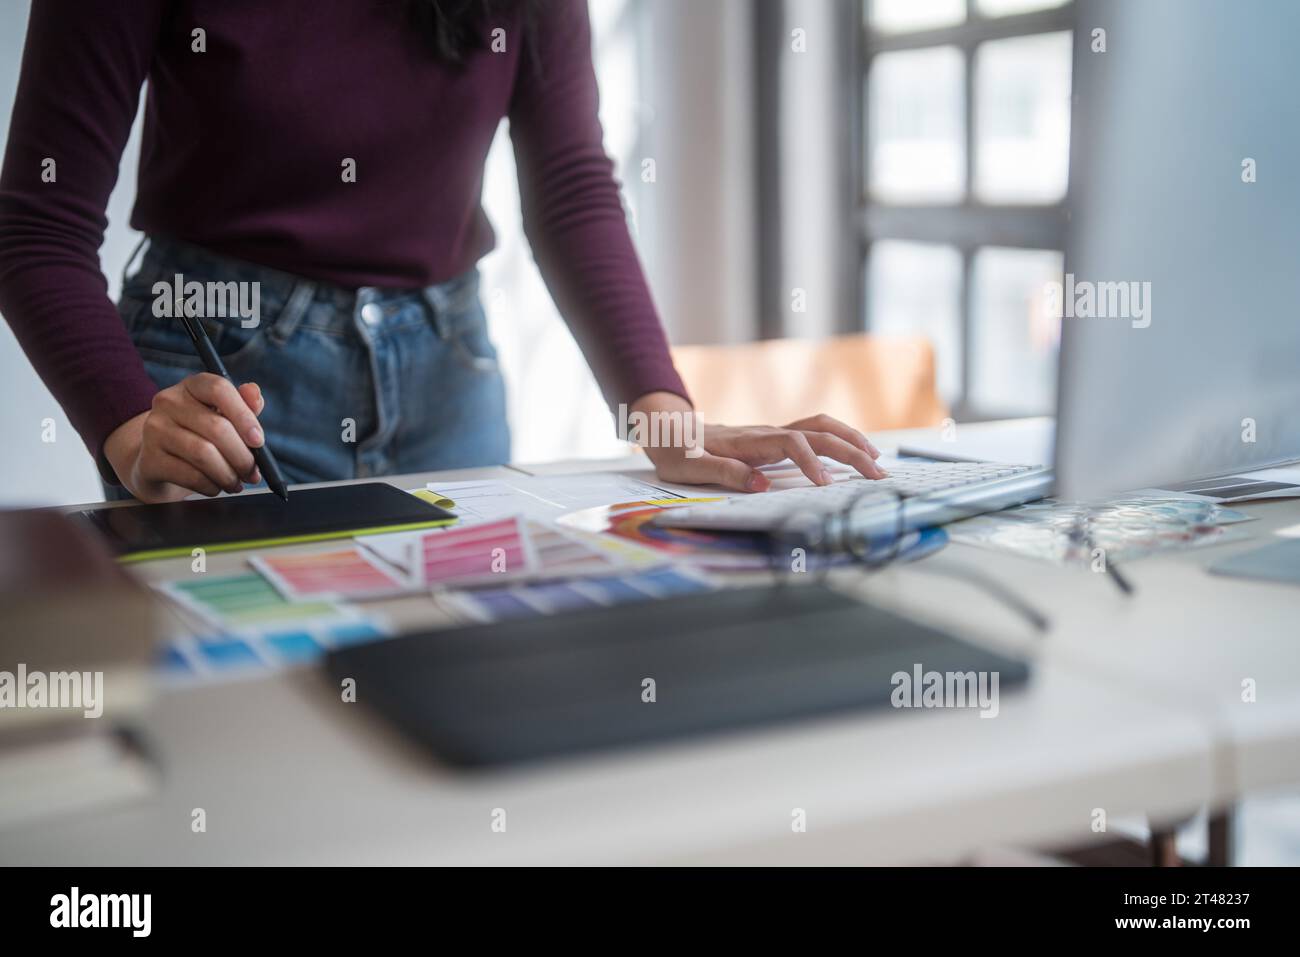 Graphiste femmes freelance écrivant sur tablette numérique à penser des idées créatives pour la marque de logo tout en tapant sur l'ordinateur et en travaillant sur graphi Banque D'Images